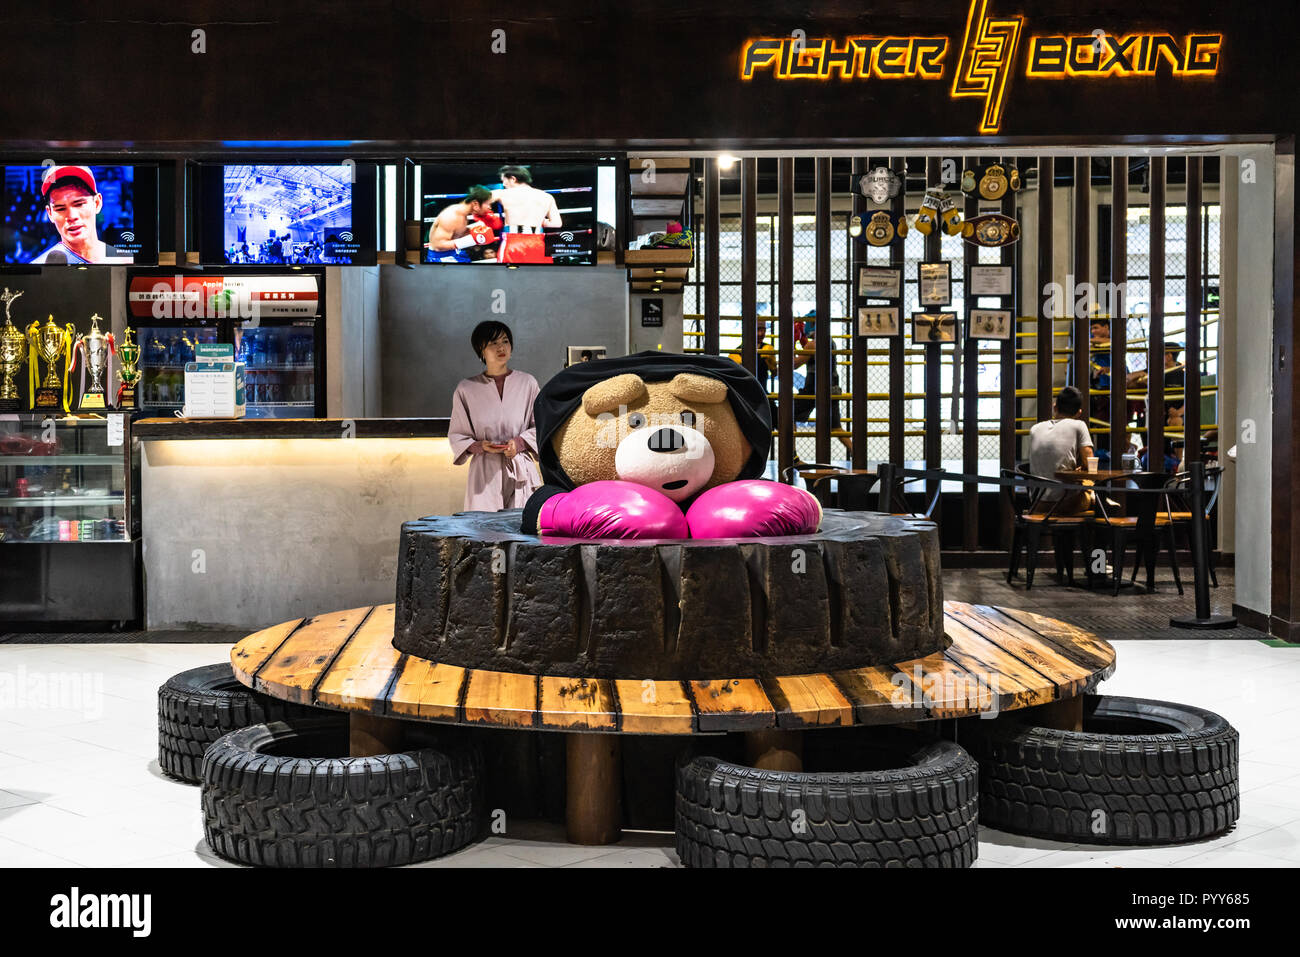 Boxing gym en Chine, mascot avec des gants de boxe Banque D'Images